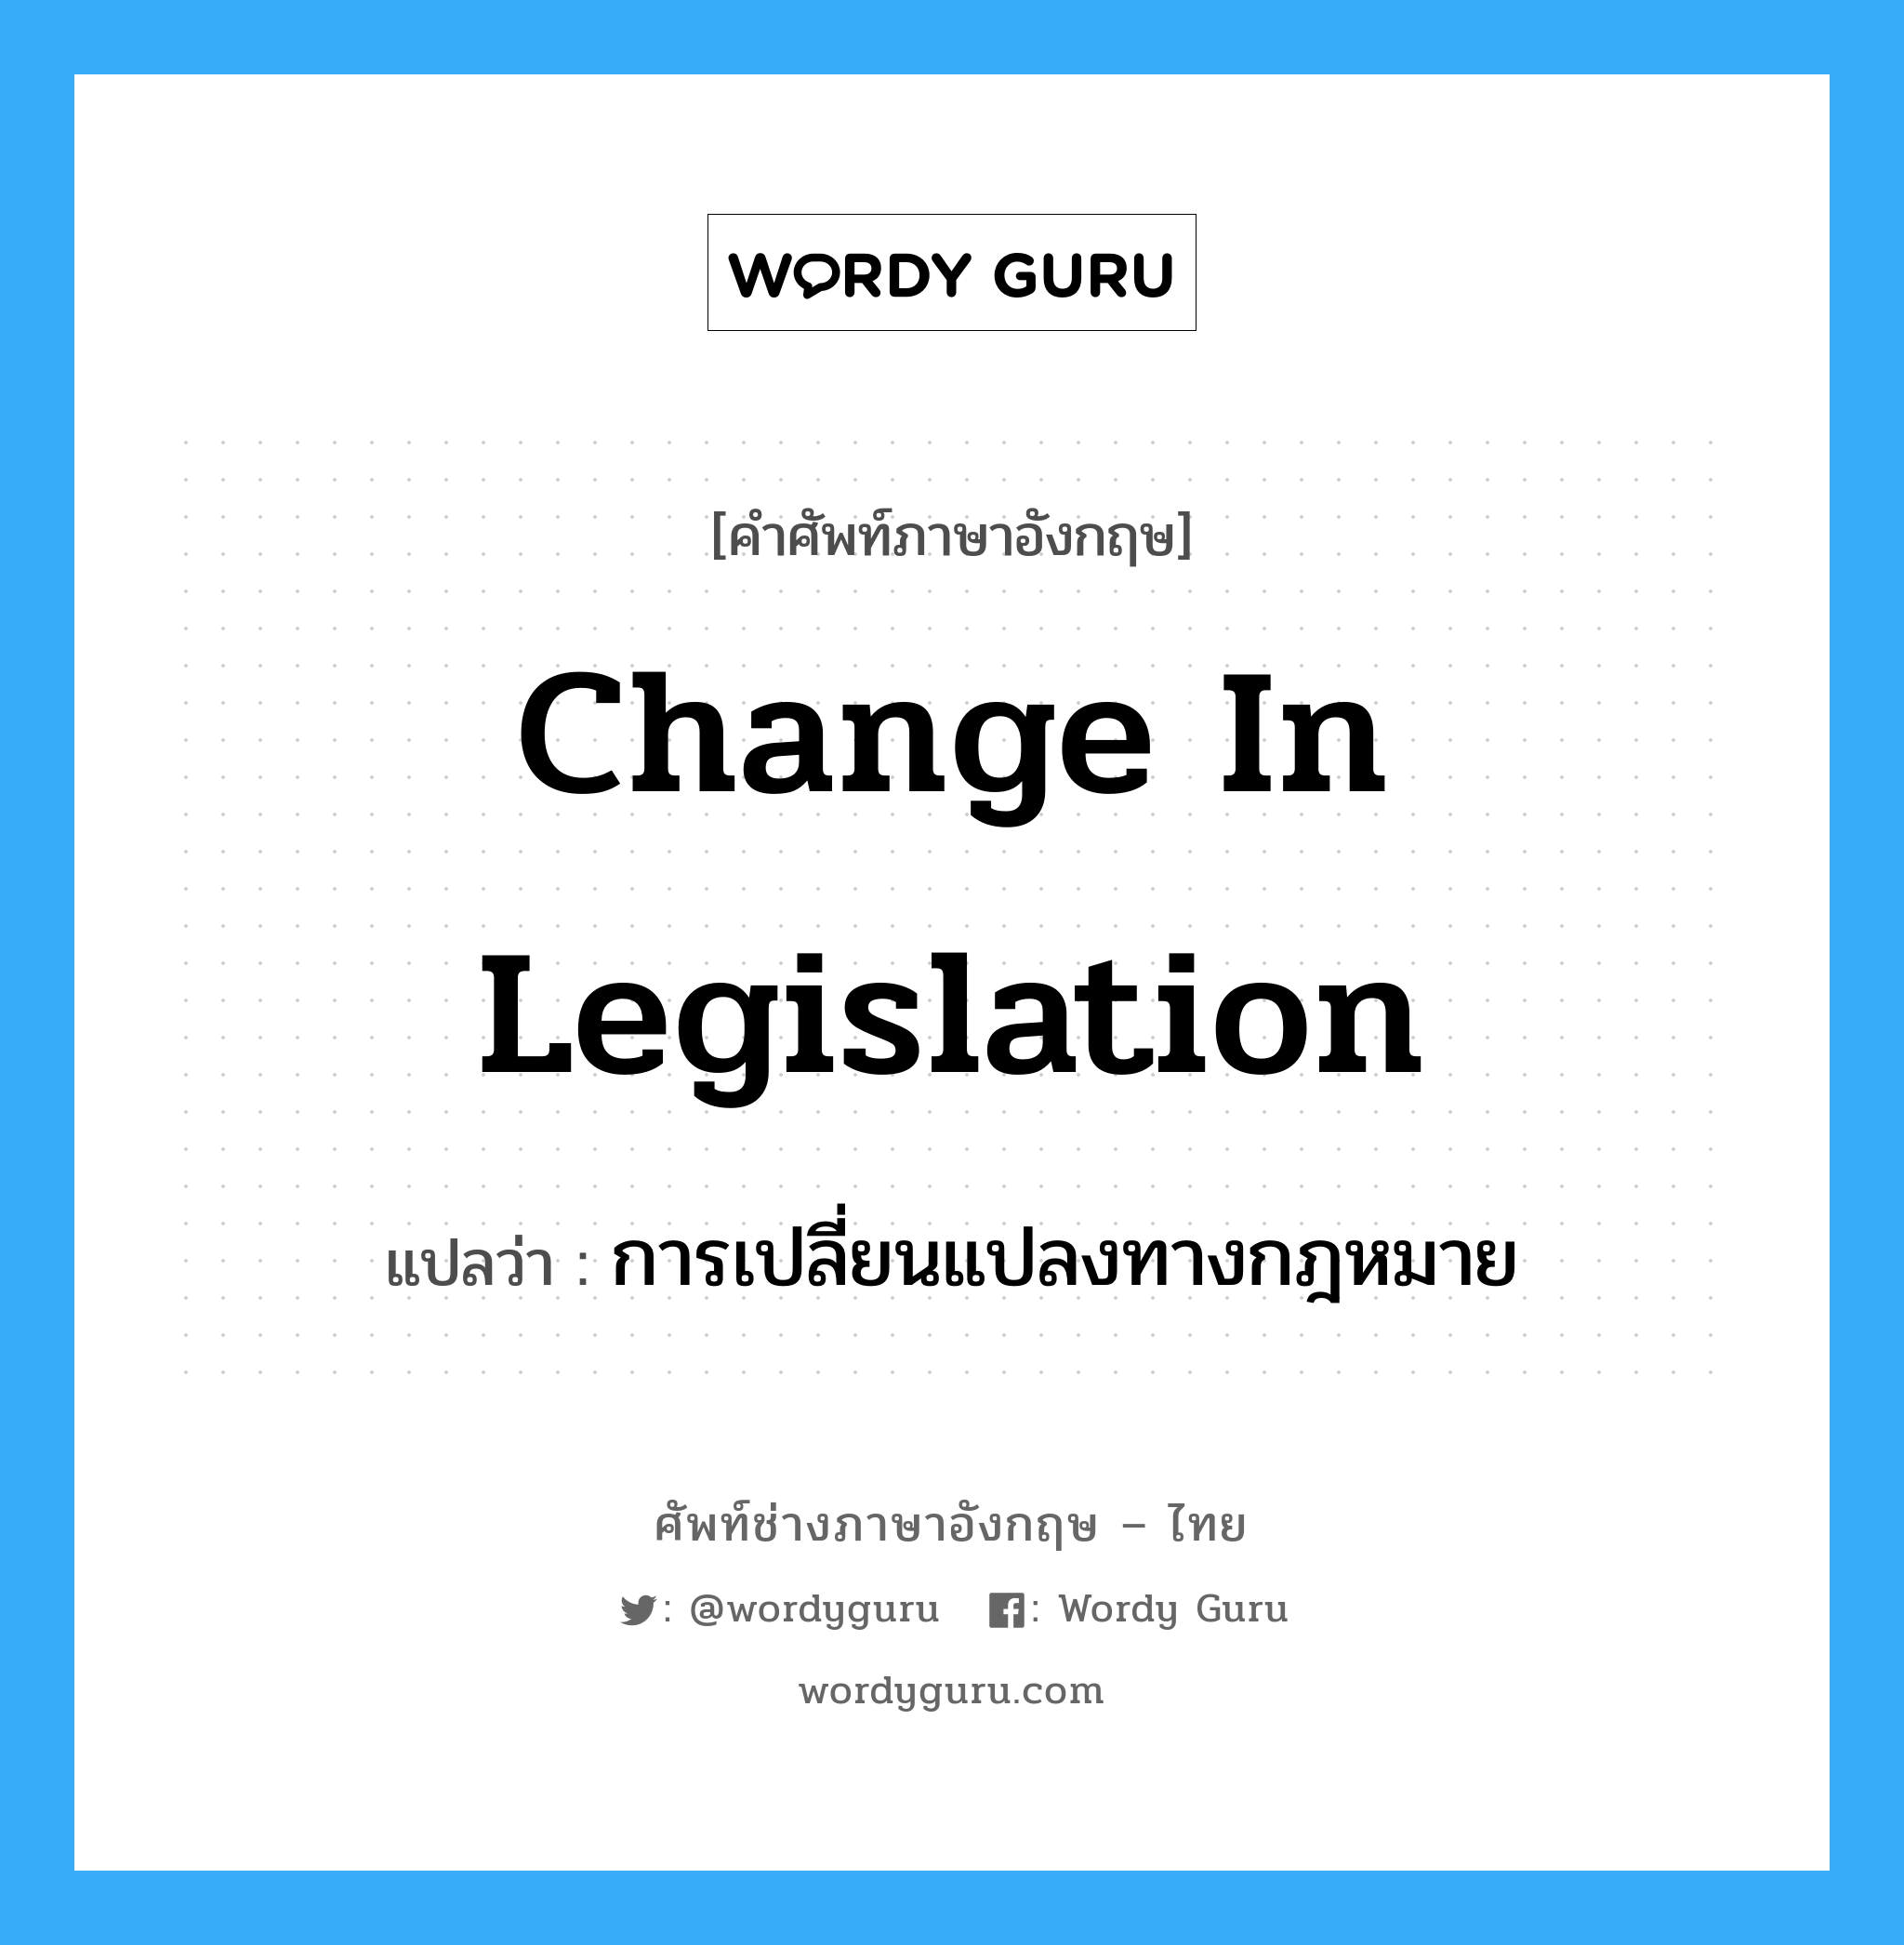 การเปลี่ยนแปลงทางกฎหมาย ภาษาอังกฤษ?, คำศัพท์ช่างภาษาอังกฤษ - ไทย การเปลี่ยนแปลงทางกฎหมาย คำศัพท์ภาษาอังกฤษ การเปลี่ยนแปลงทางกฎหมาย แปลว่า change in legislation